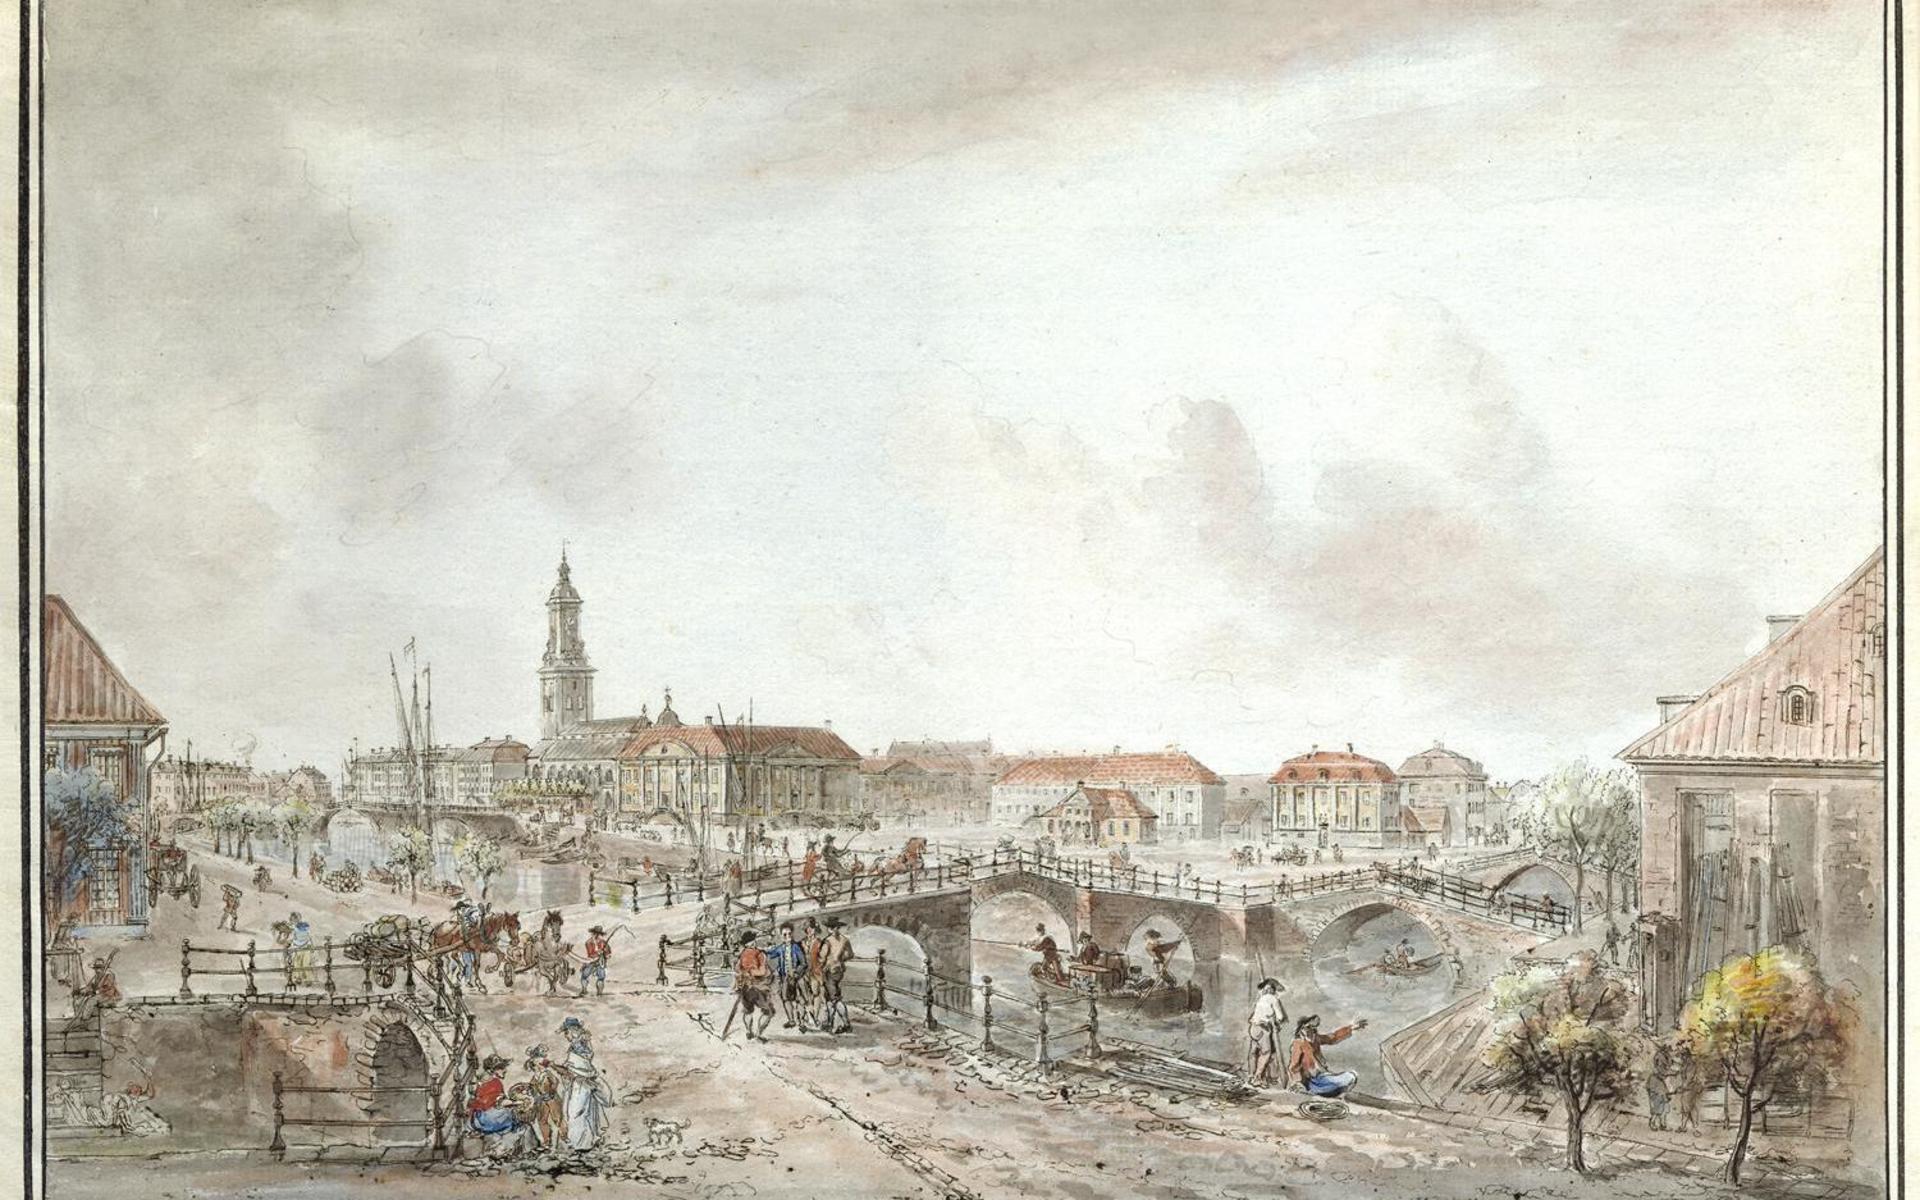 När konstnären Elias Marin på 1780-talet fick i uppdrag att dokumentera svenska städer var området kring Brunnsparken i Göteborg en självklar plats. Martins bild myllrar av de detaljer som var typiska i Göteborg på 1700-talet: de välvda stenbroarna, tvätterskorna (i nedre vänstra hörnet), hemförarbåtarna, bärarna.